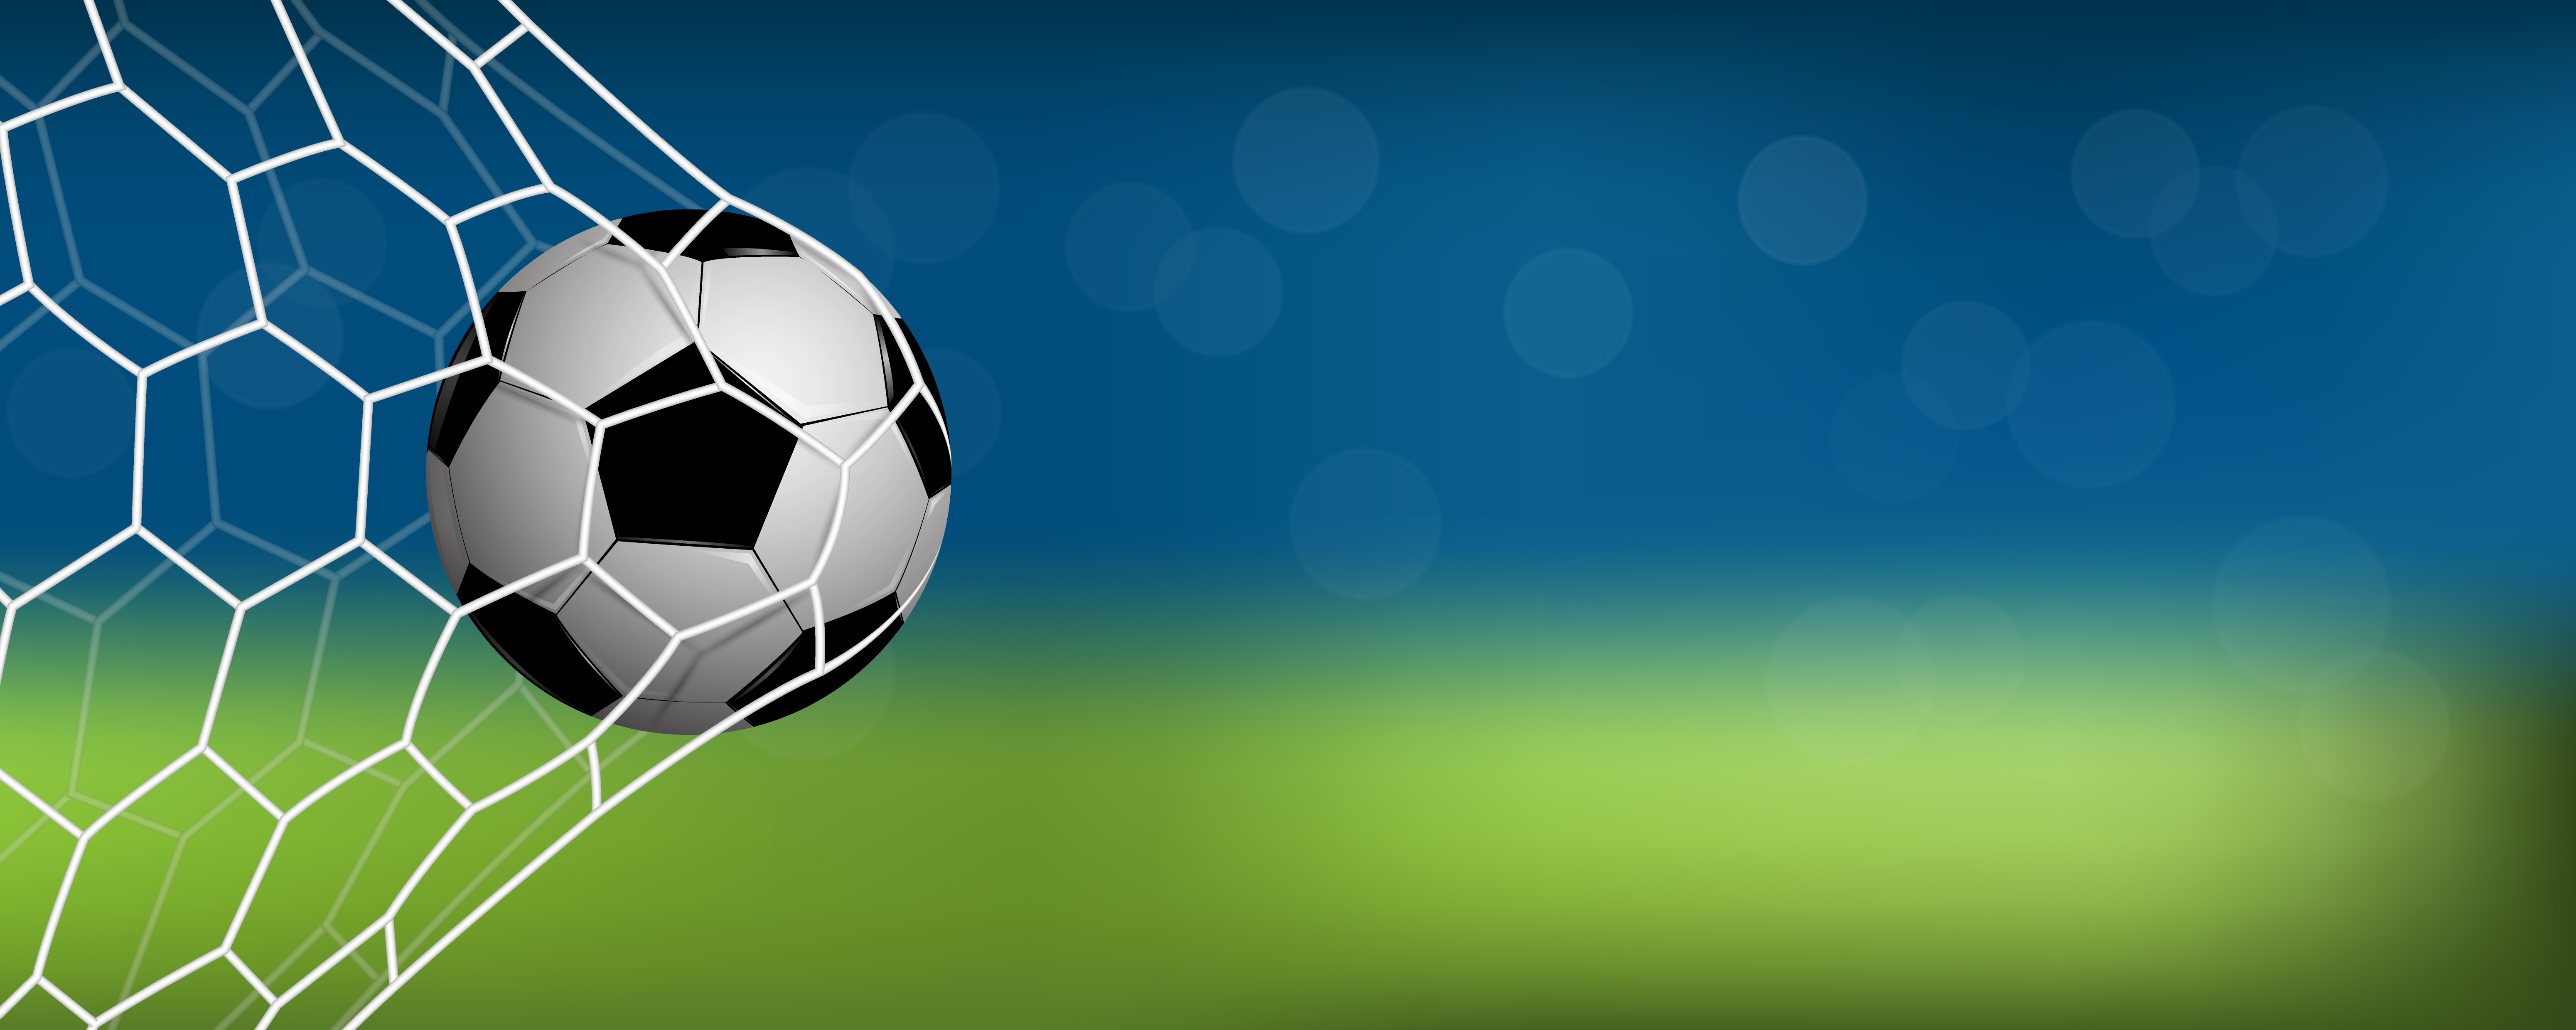 realistischer Fußball oder Fußball im Netz mit Kopierraum 1330144 Vektor Kunst bei Vecteezy